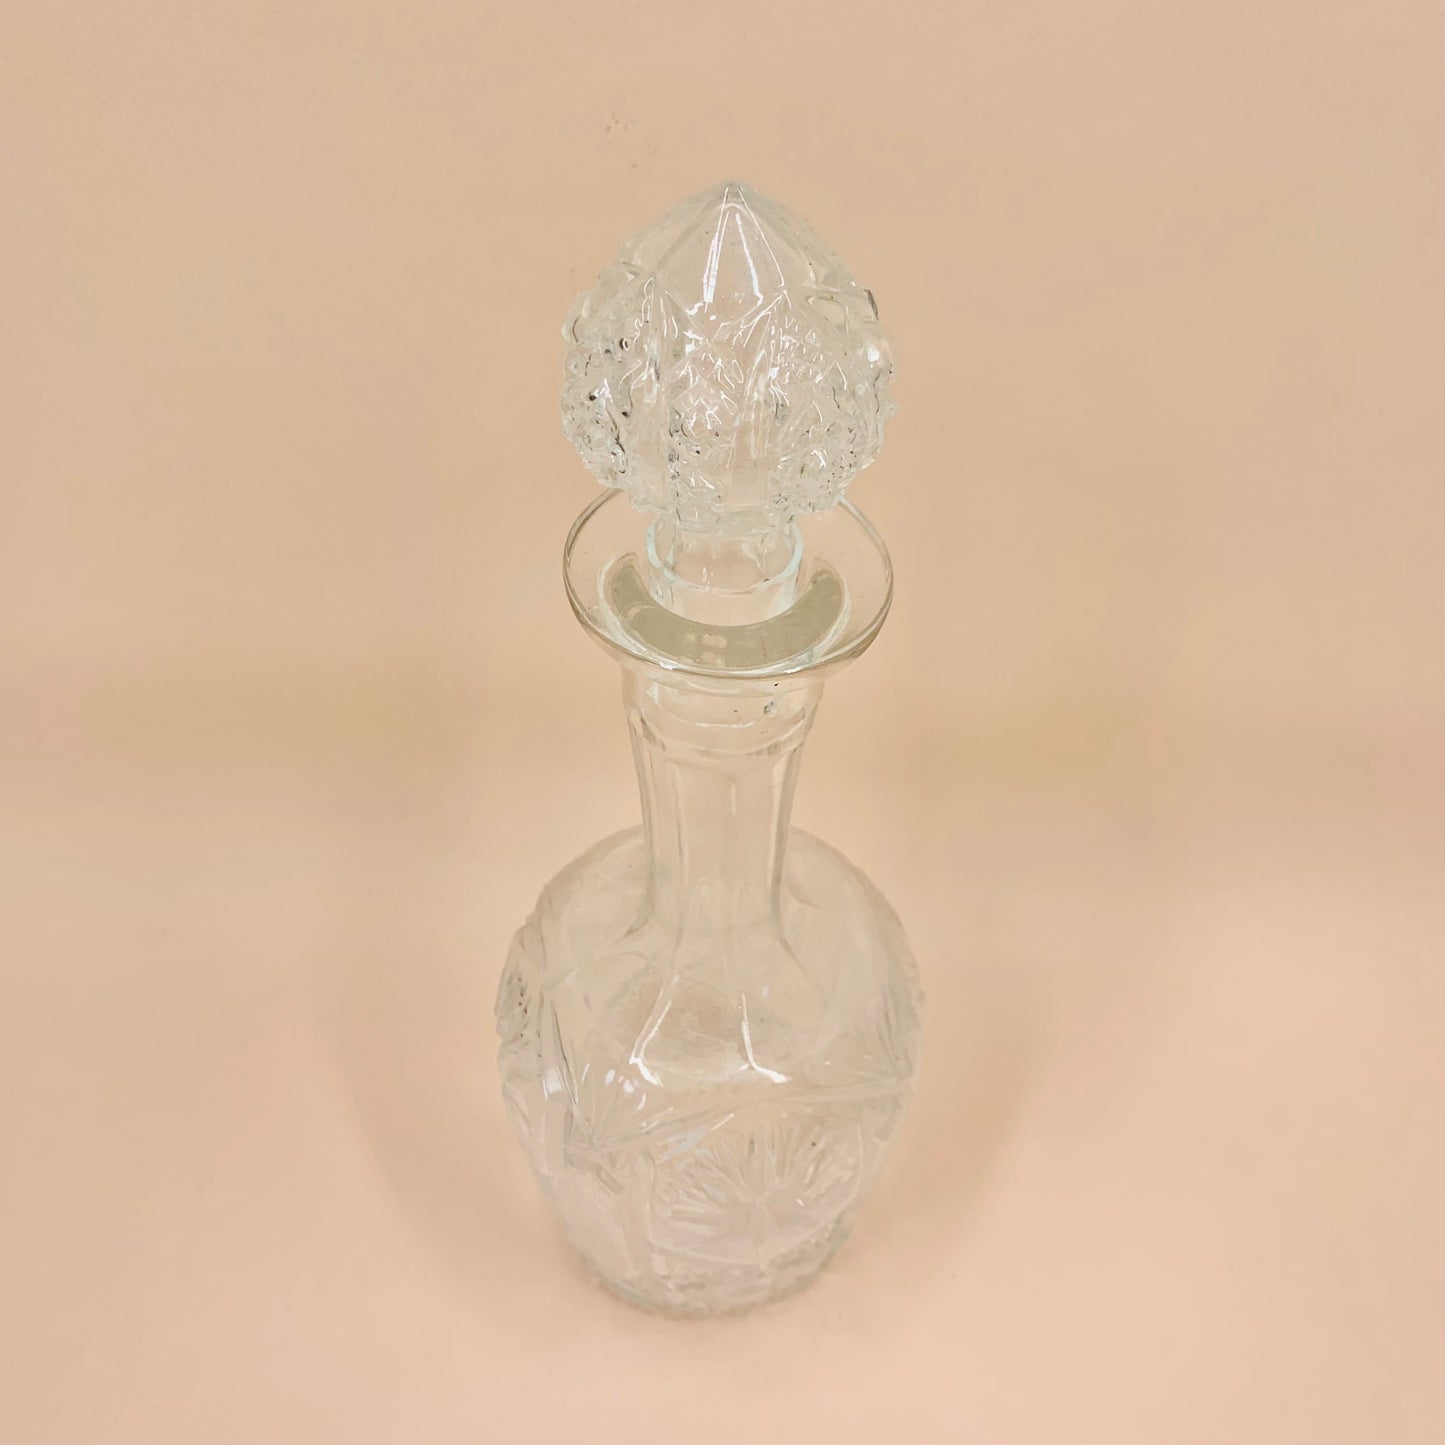 Antique pressed glass decanter